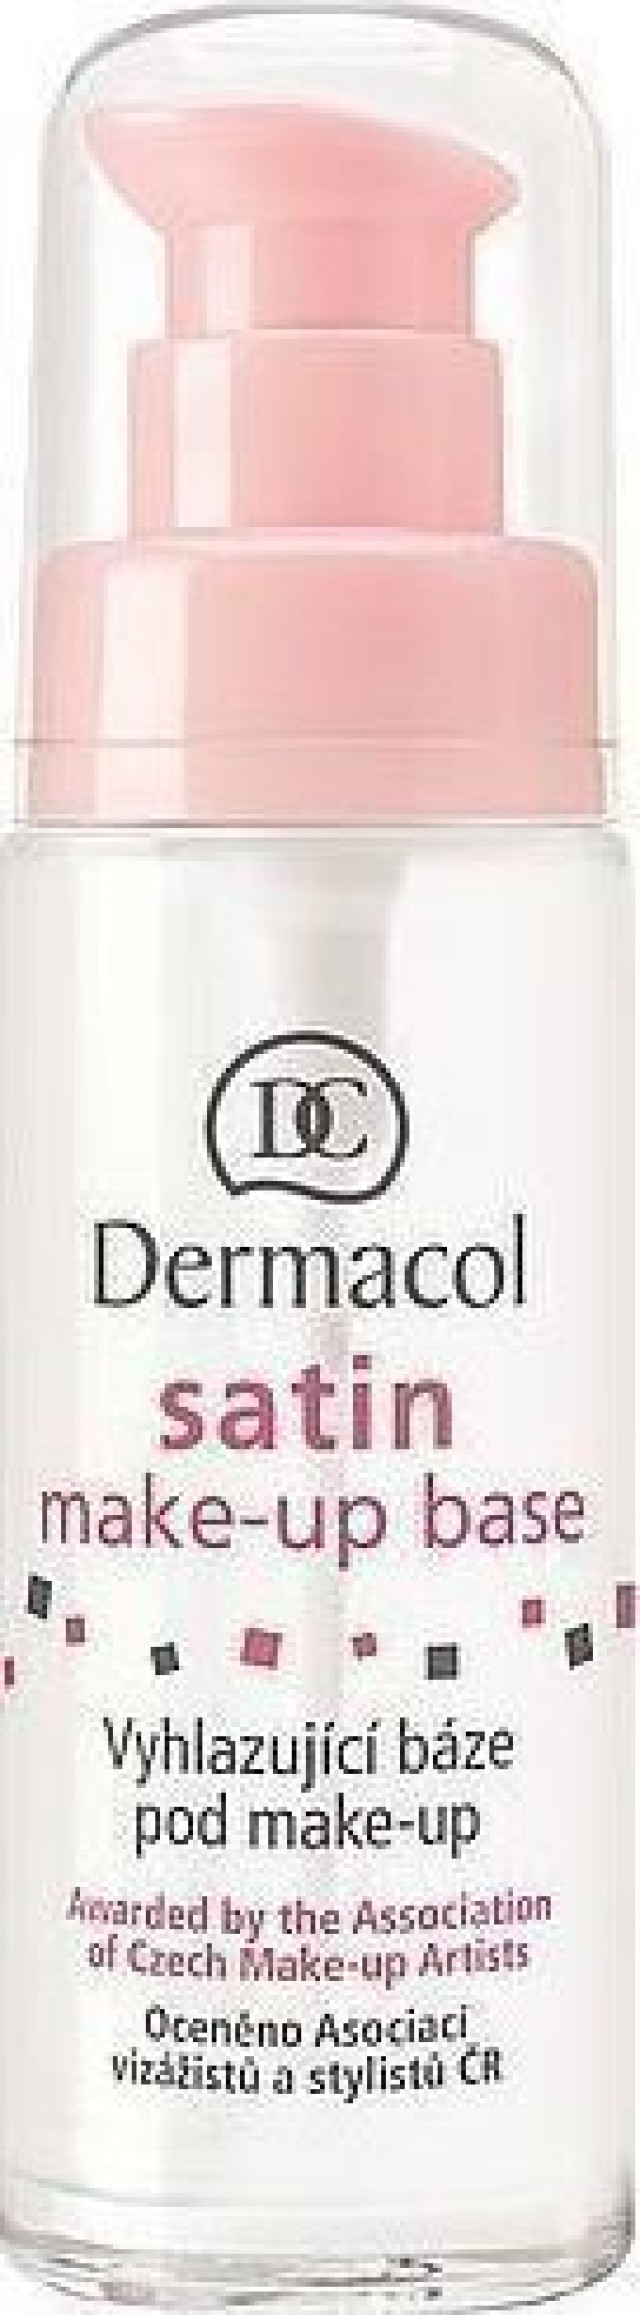 Dermacol Satin Make Up Base Βάση για Make Up 30ml